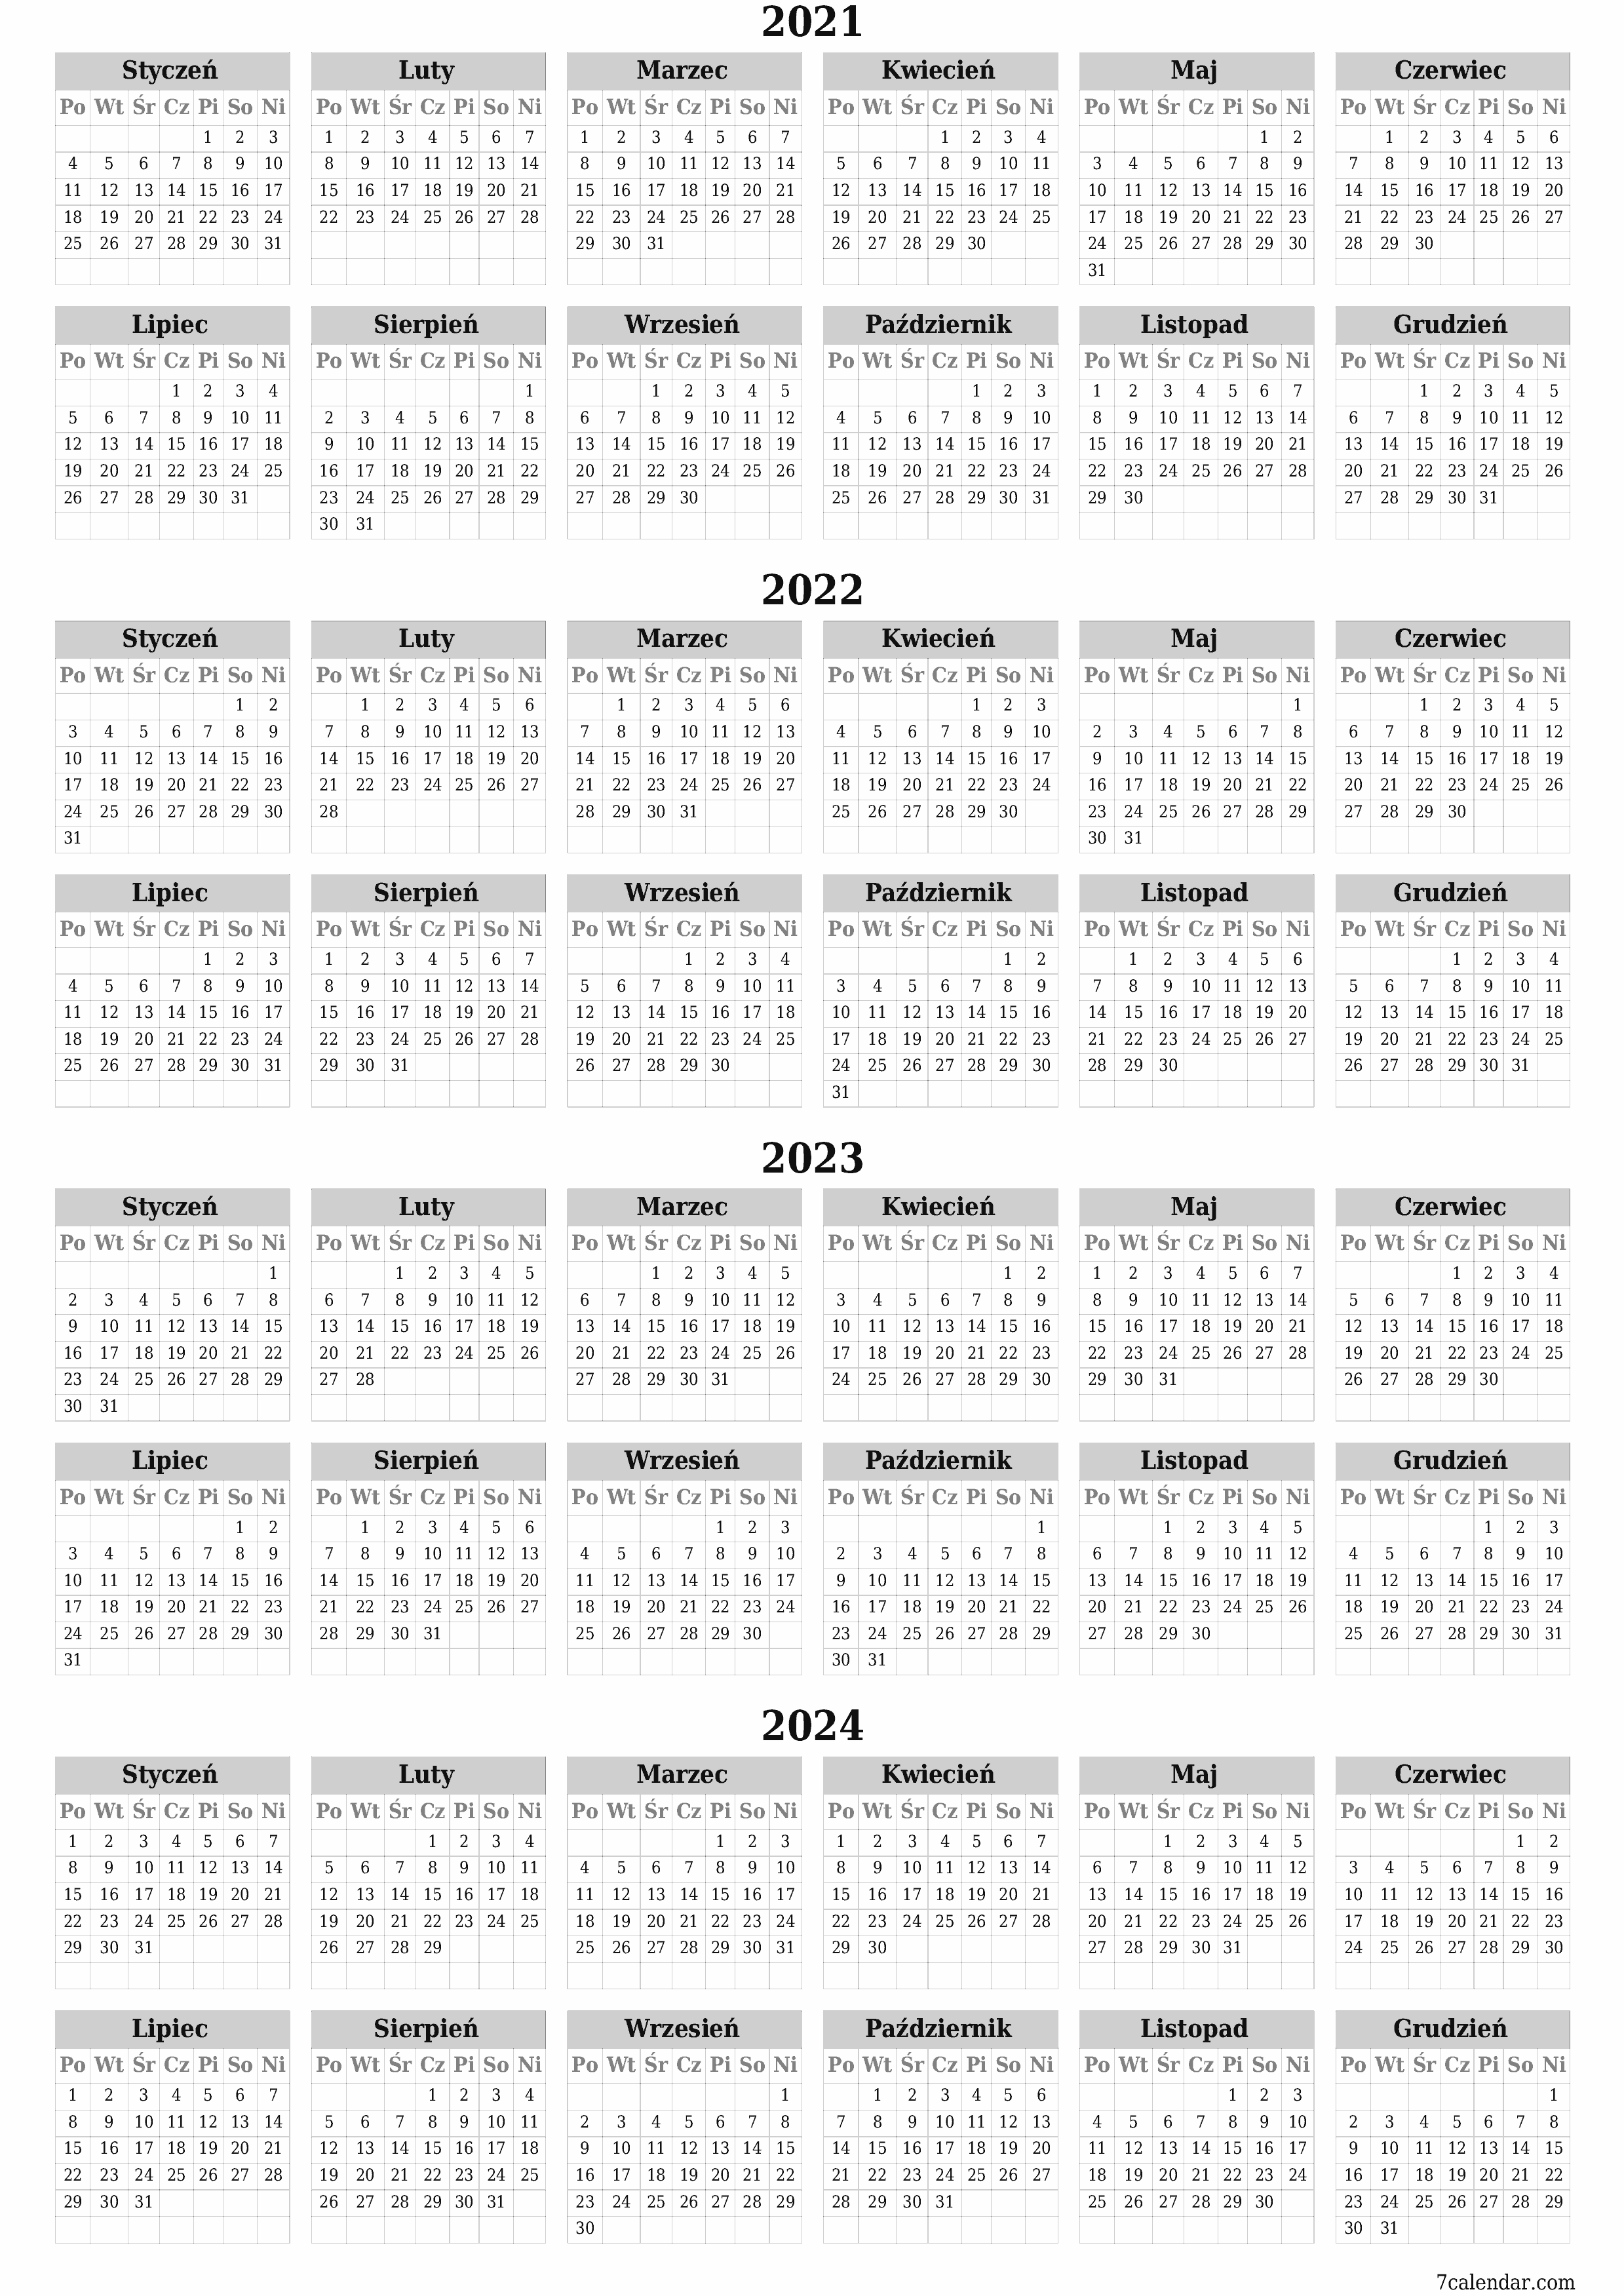  do druku ścienny szablon a darmowy pionowy Roczny kalendarz Czerwiec (Cze) 2021